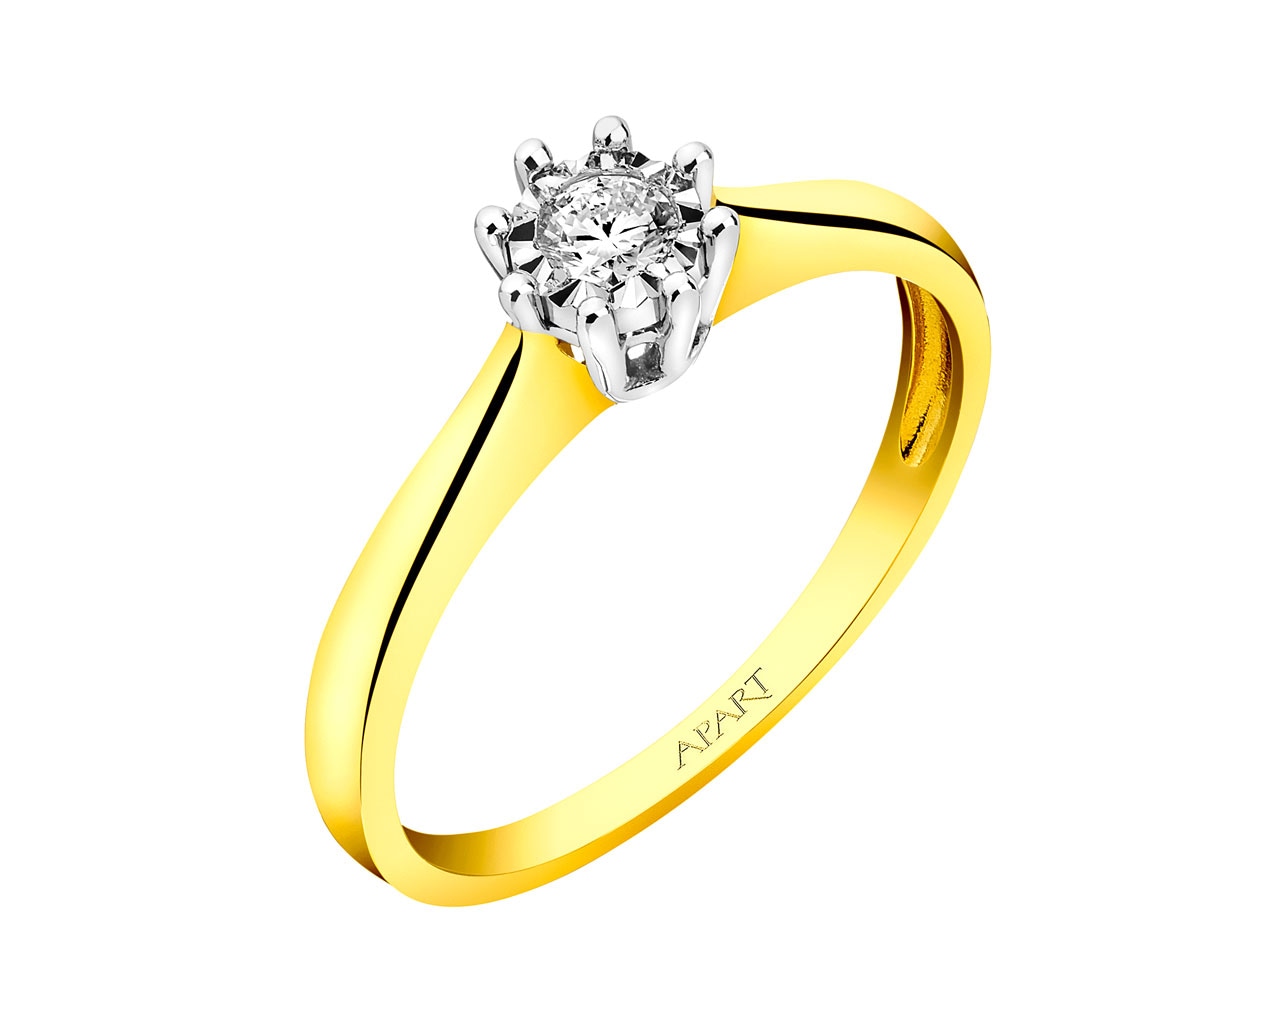 Prsten ze žlutého a bílého zlata s briliantem 0,10 ct - ryzost 585